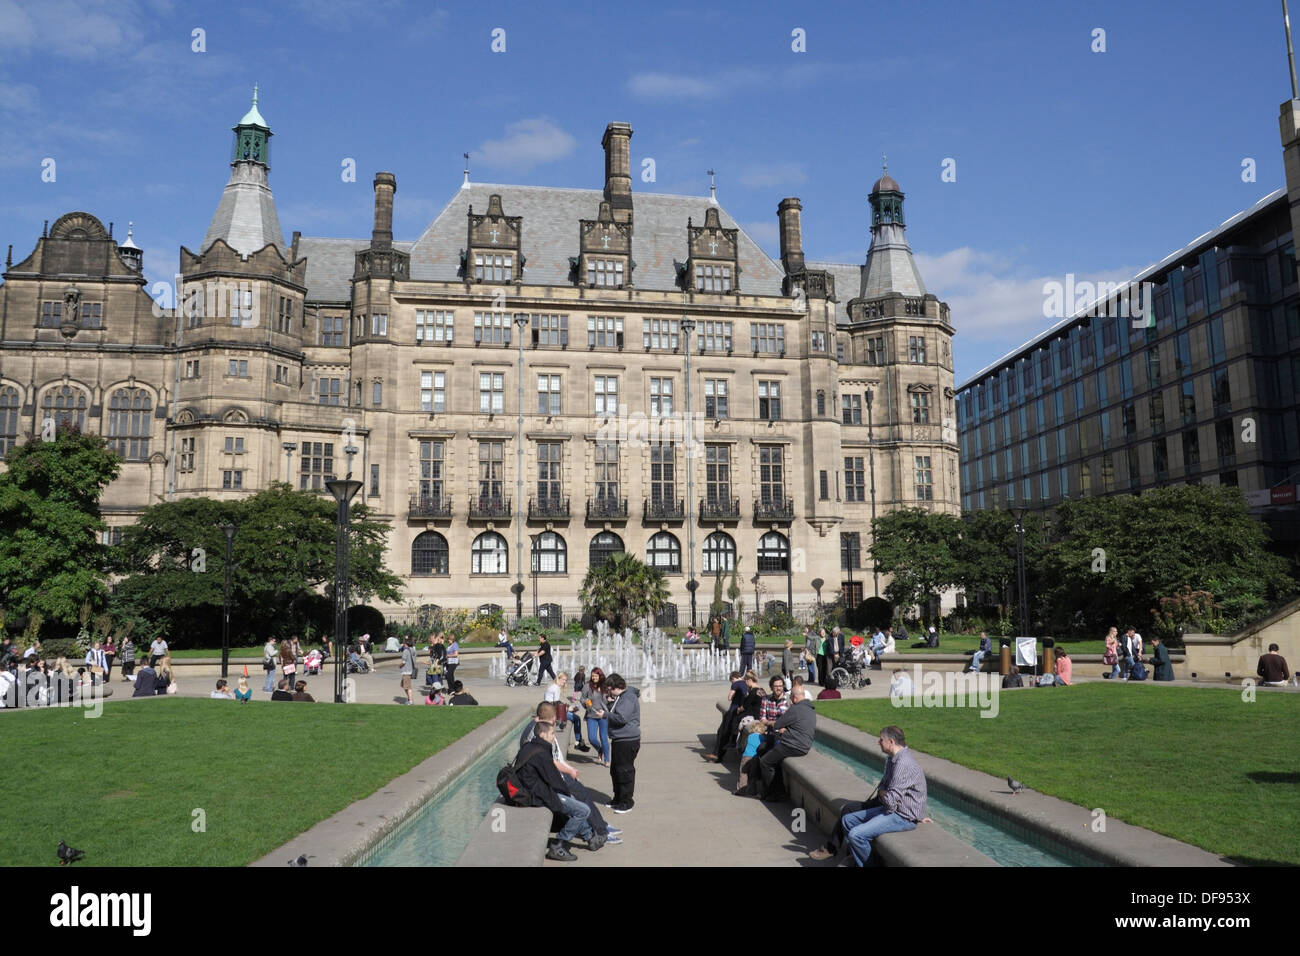 Sheffield Town Hall e Peace Gardens, centro di Sheffield, Inghilterra. architettura vittoriana. Edificio classificato di grado 1 spazio pubblico Foto Stock